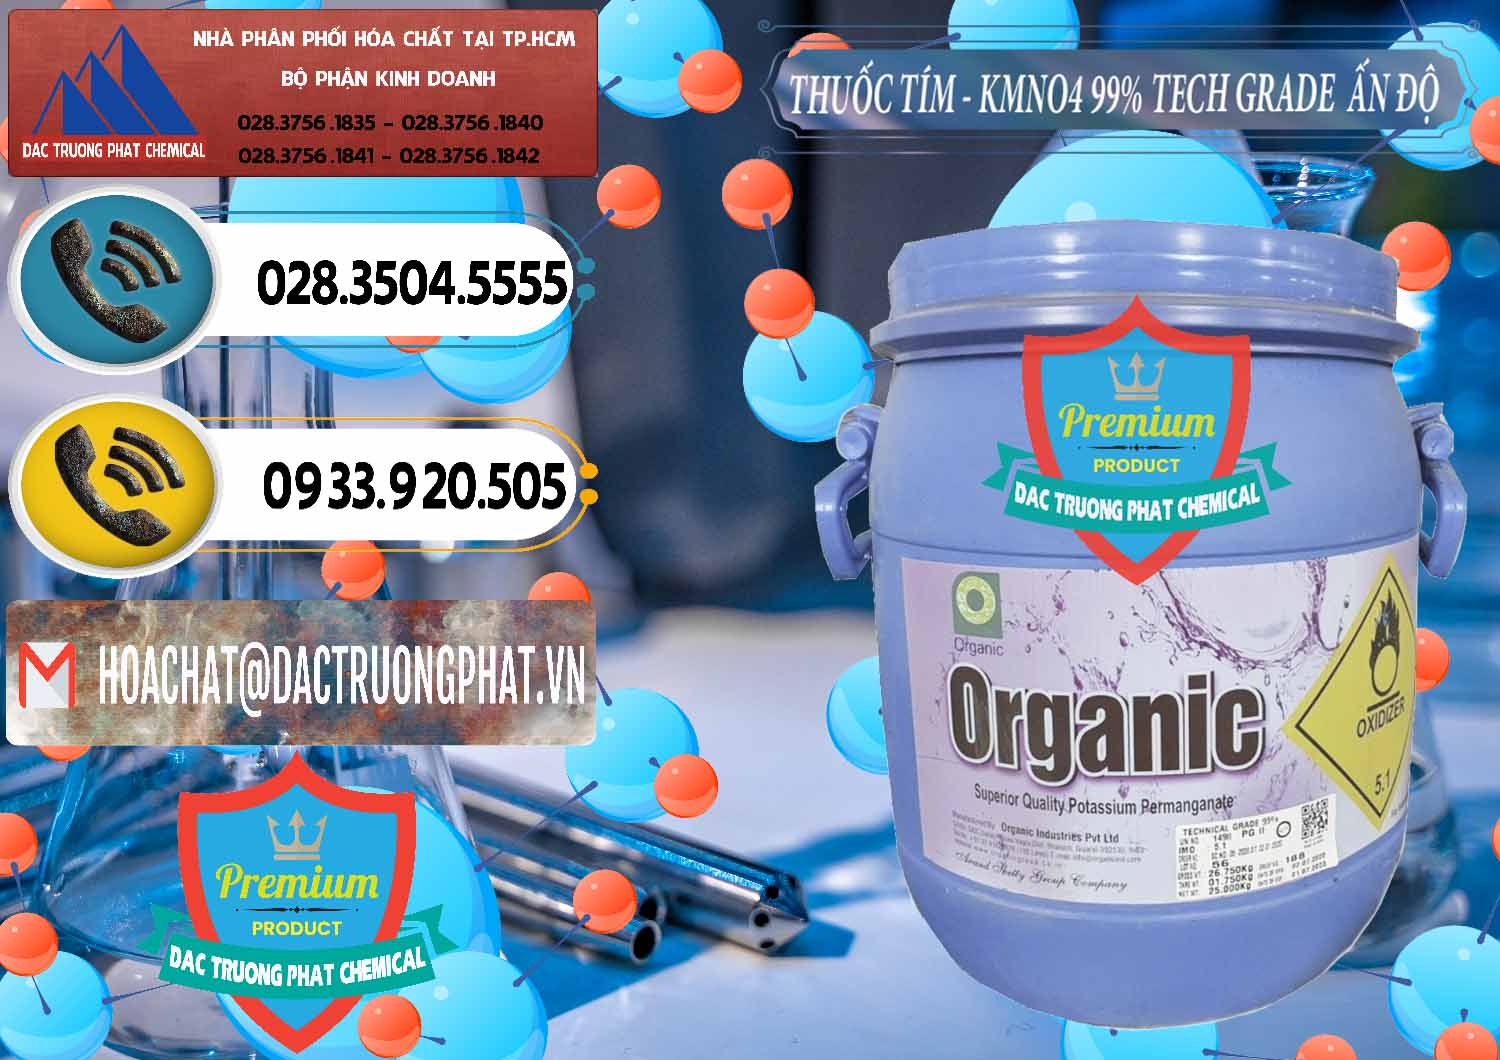 Cty nhập khẩu - bán Thuốc Tím - KMNO4 99% Organic Group Ấn Độ India - 0250 - Đơn vị chuyên cung cấp - bán hóa chất tại TP.HCM - hoachatdetnhuom.vn